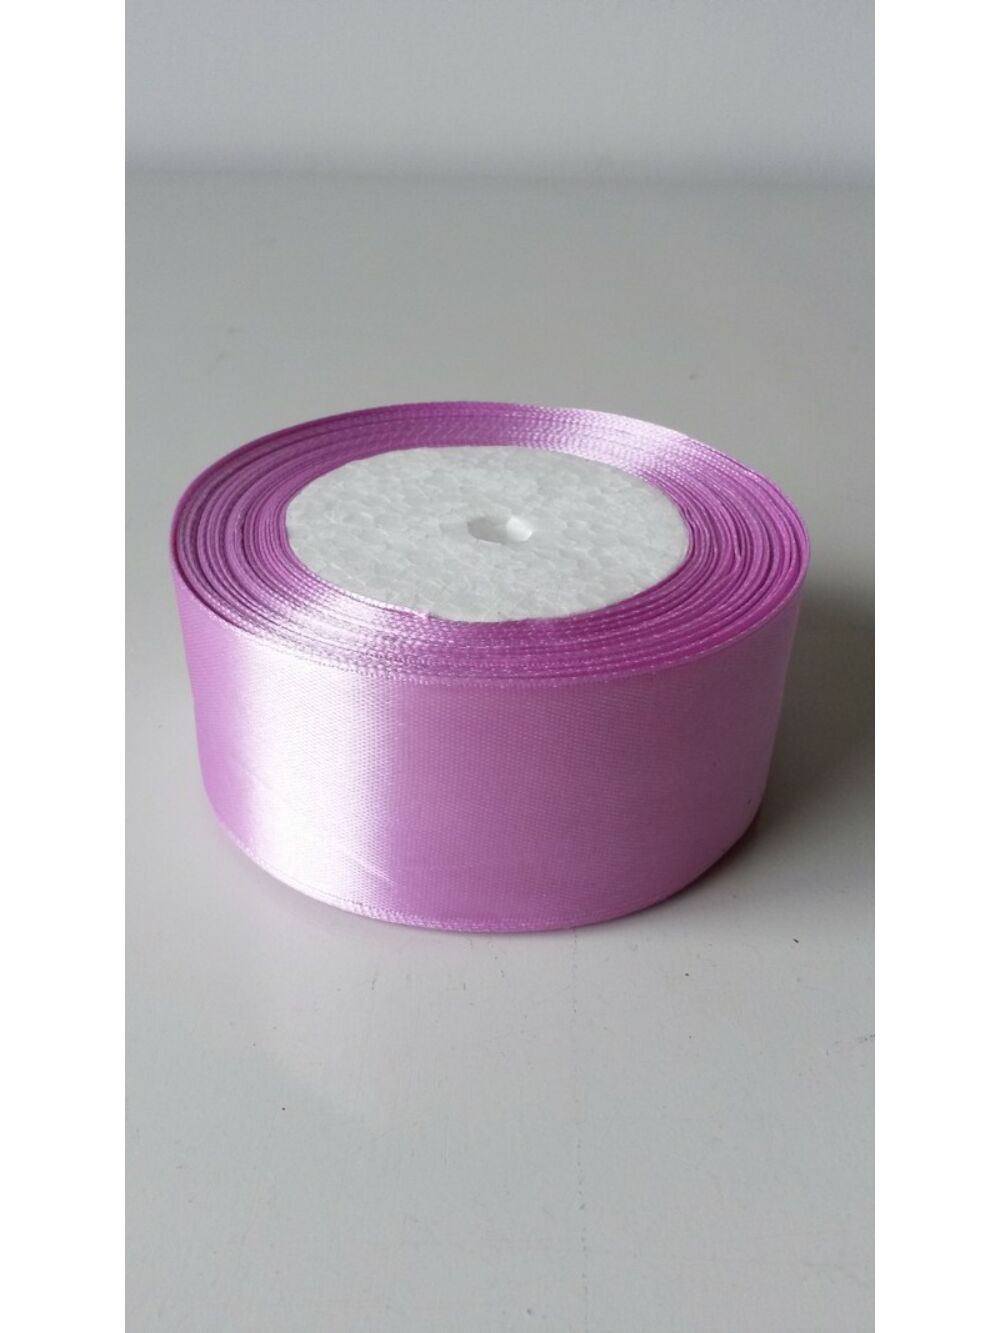 40 mm-es szatén szalag - Világos lila